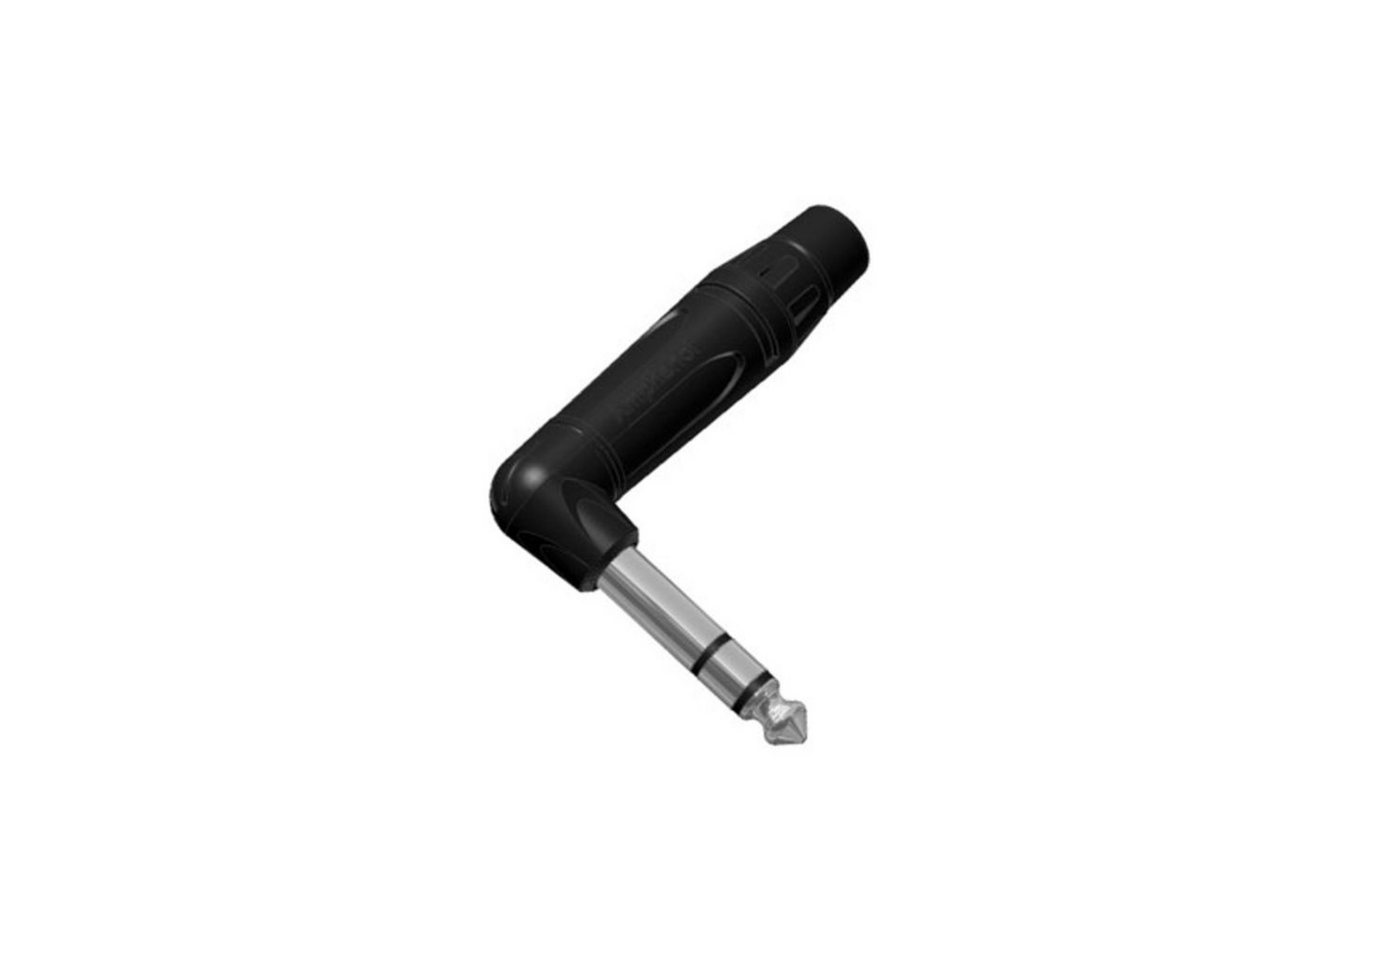 Amphenol Klinkenstecker, (Stecker & Adapter, Kabel-Stecker), ACPS-TB-AU Winkelklinke stereo - Kabel Stecker von Amphenol